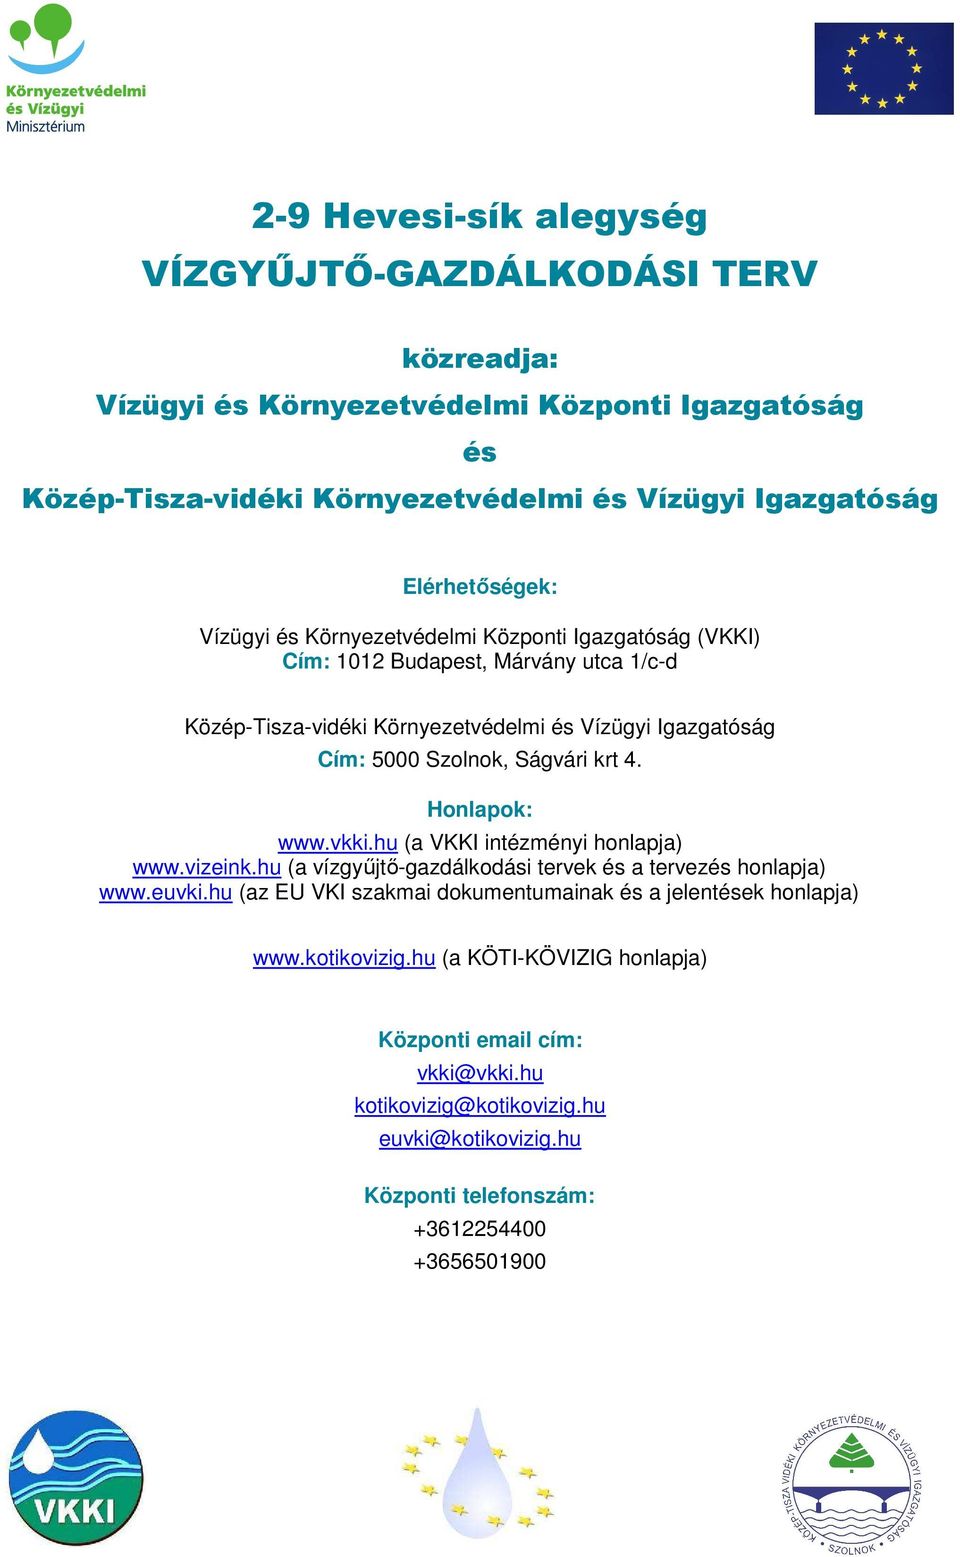 Honlapok: www.vkki.hu (a VKKI intézményi honlapja) www.vizeink.hu (a vízgyűjtő-gazdálkodási tervek és a tervezés honlapja) www.euvki.